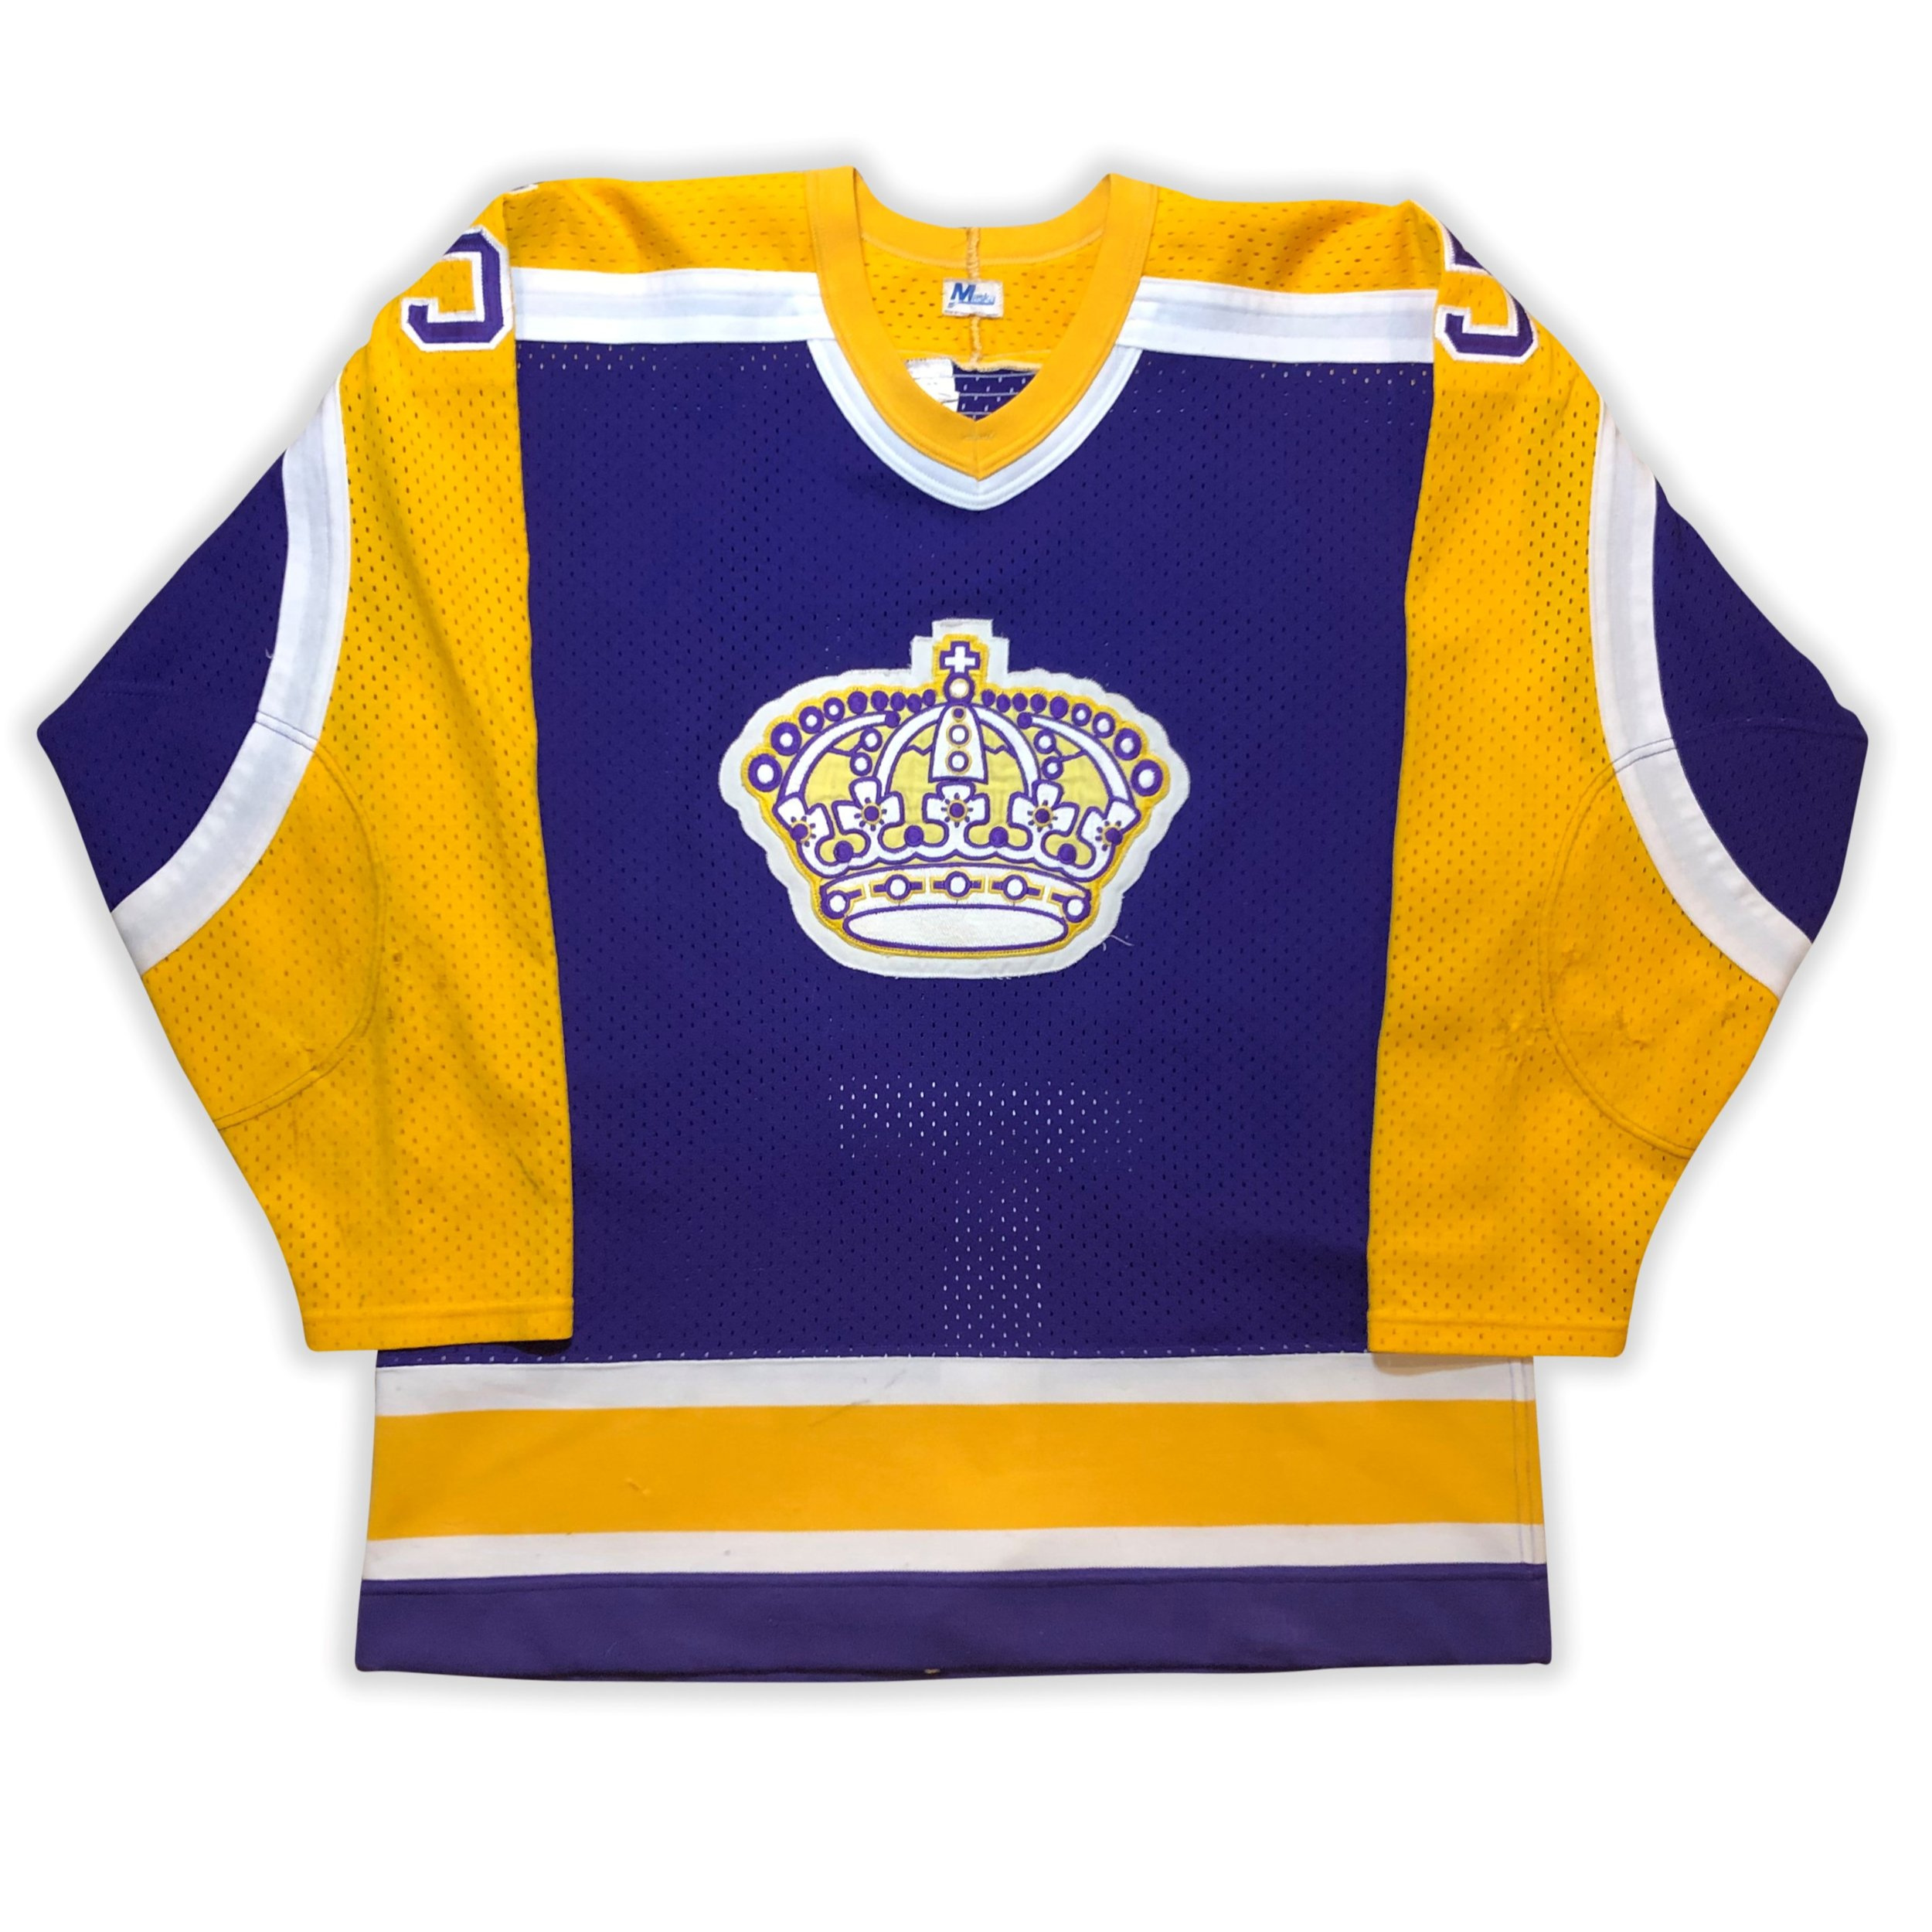 la kings crown jersey